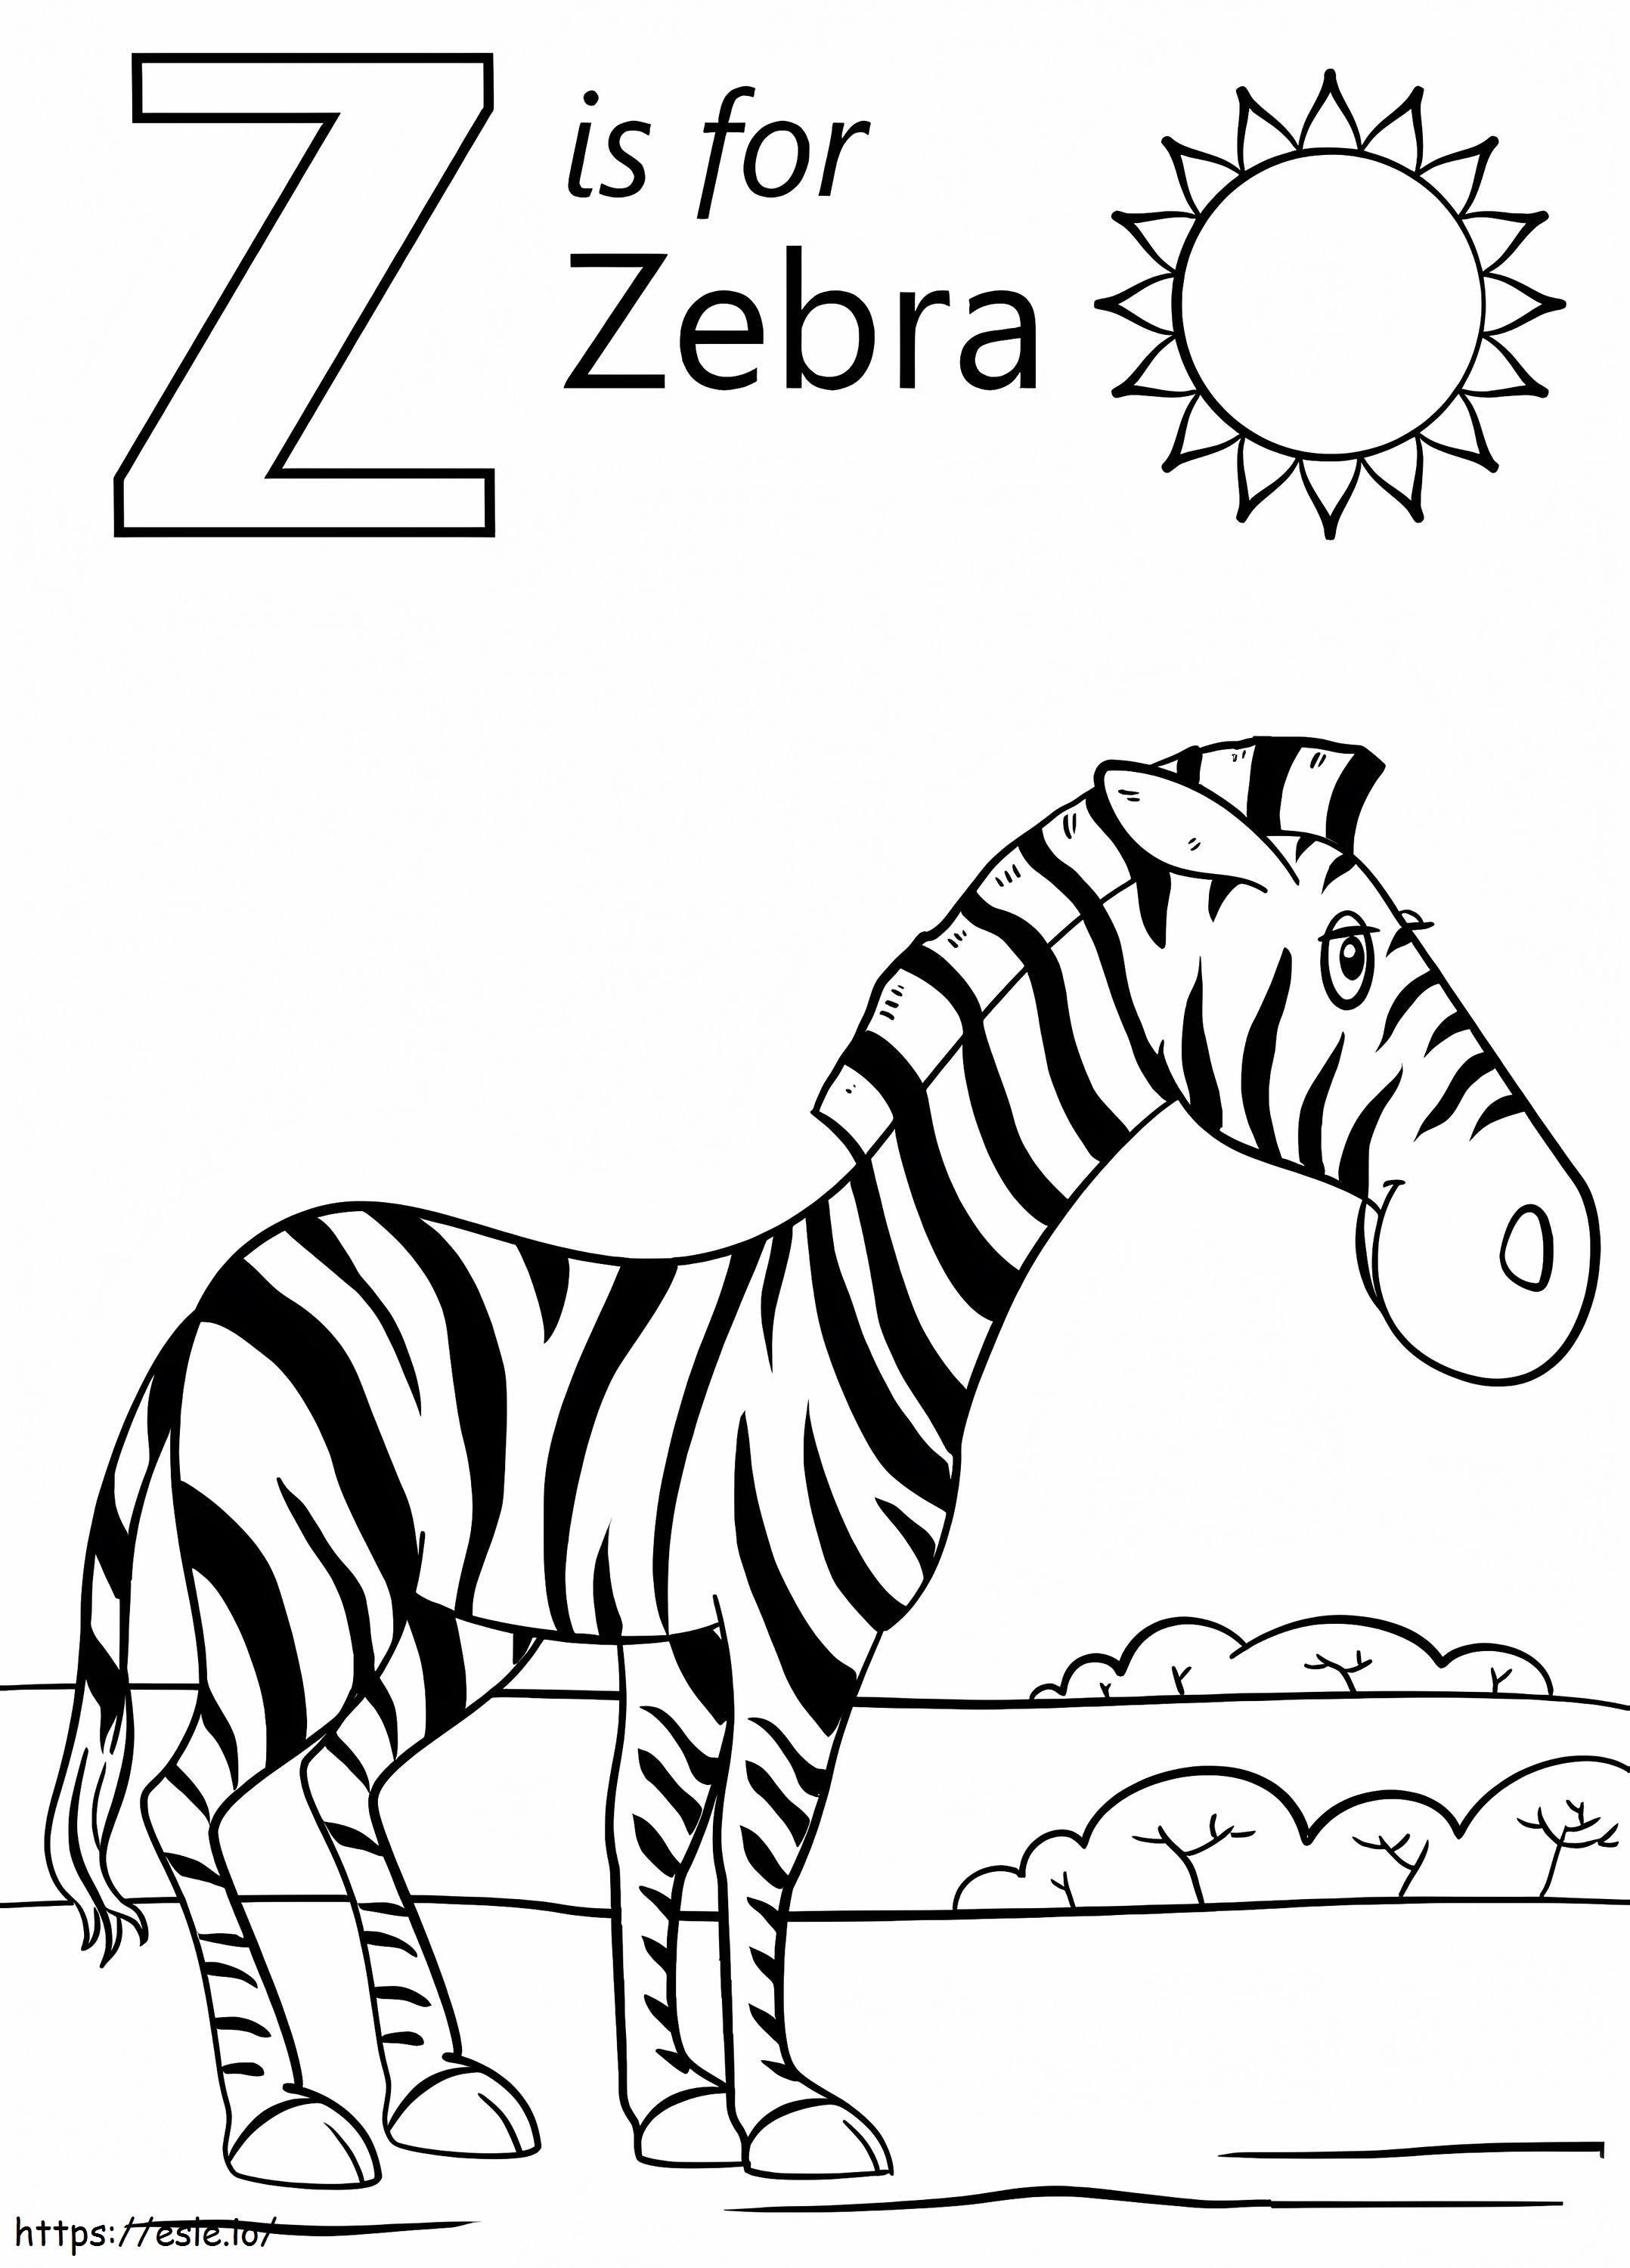 Zebra Z betű kifestő